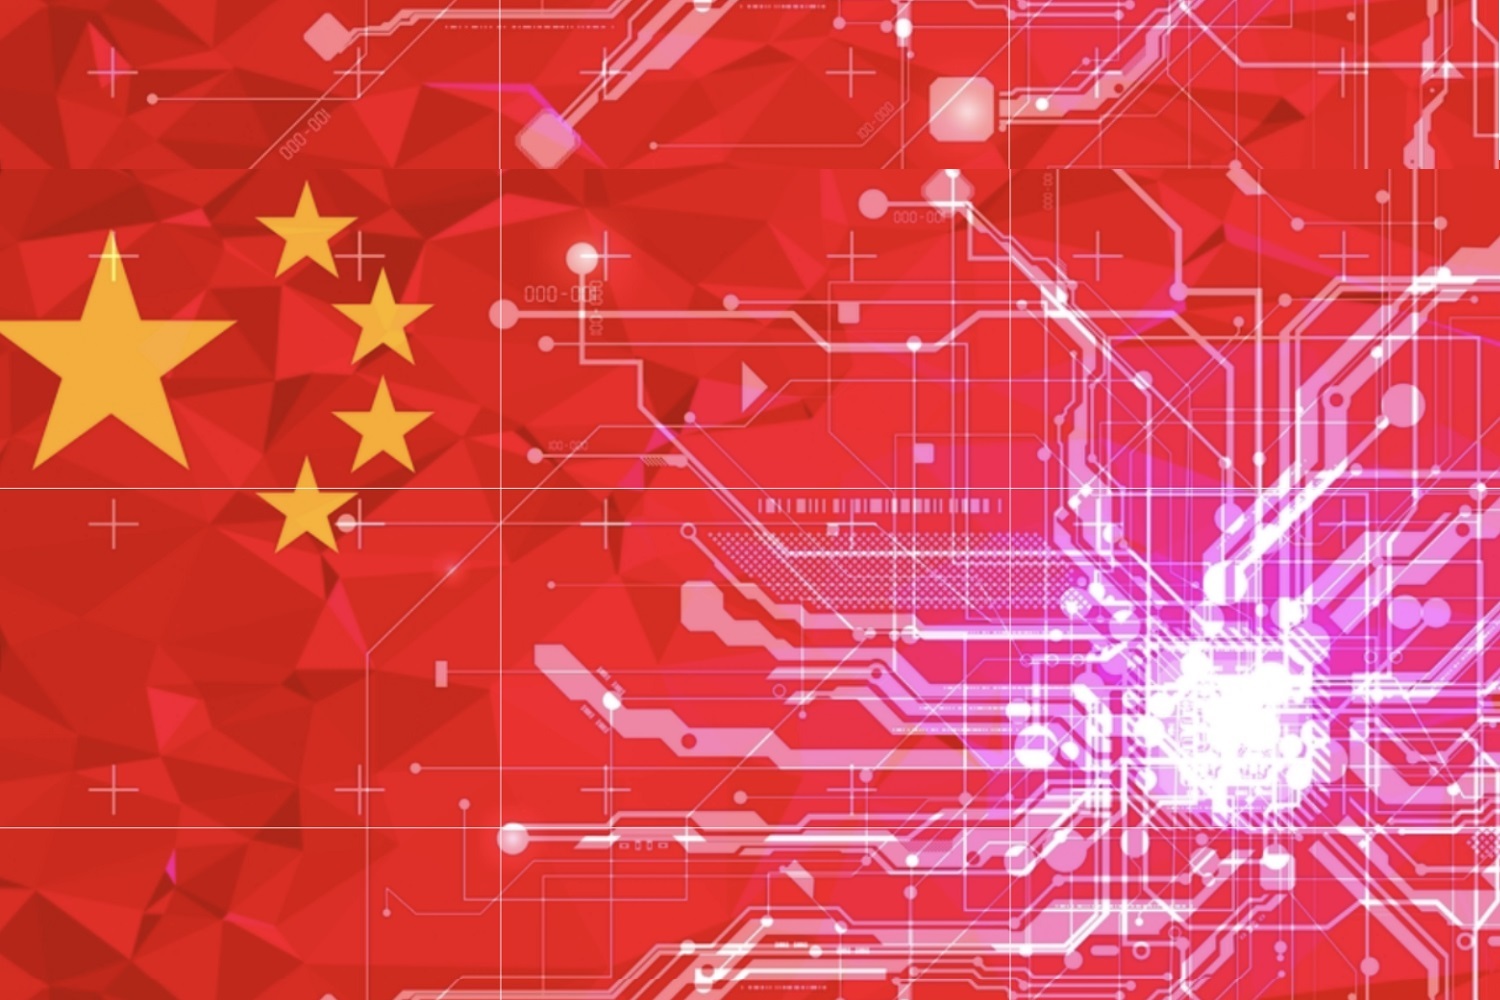 چین نے خبردار کیا کہ بی ٹی سی قدر میں صفر تک پہنچ جائے گا: پلیٹو بلاکچین ڈیٹا انٹیلی جنس کی رپورٹ۔ عمودی تلاش۔ عی